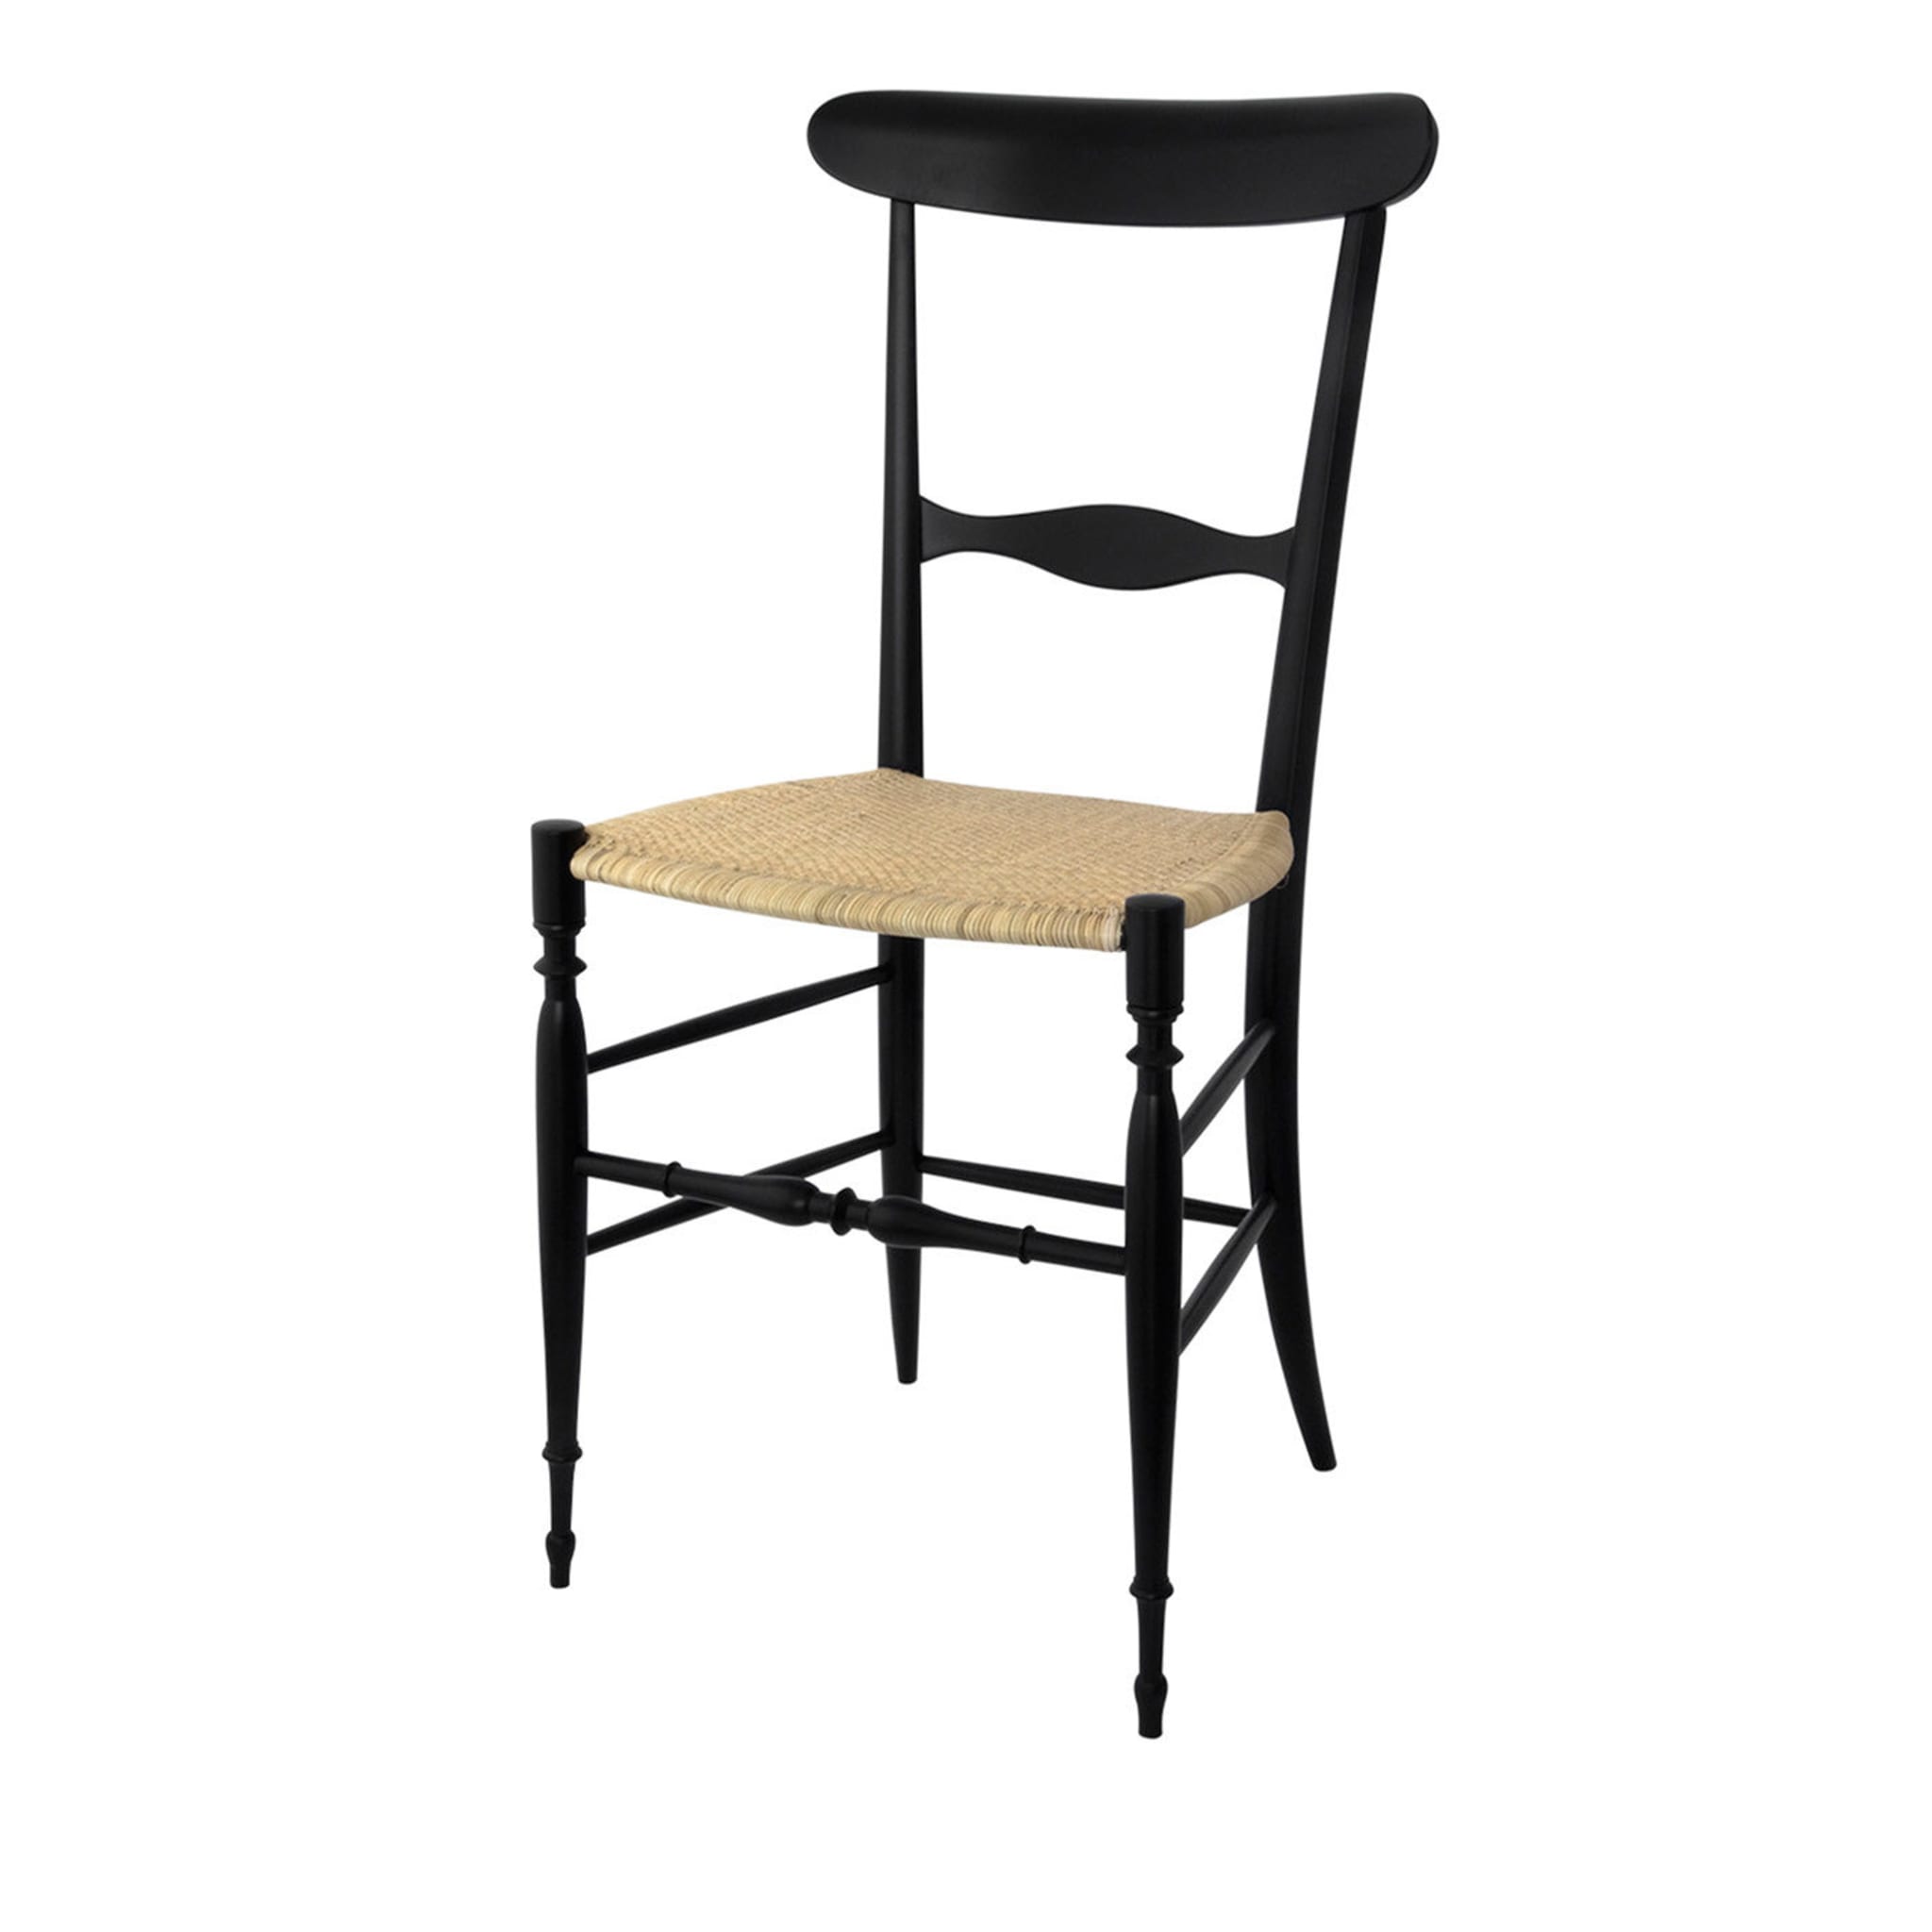 Campanino Classica Black Beechwood Chair - Main view